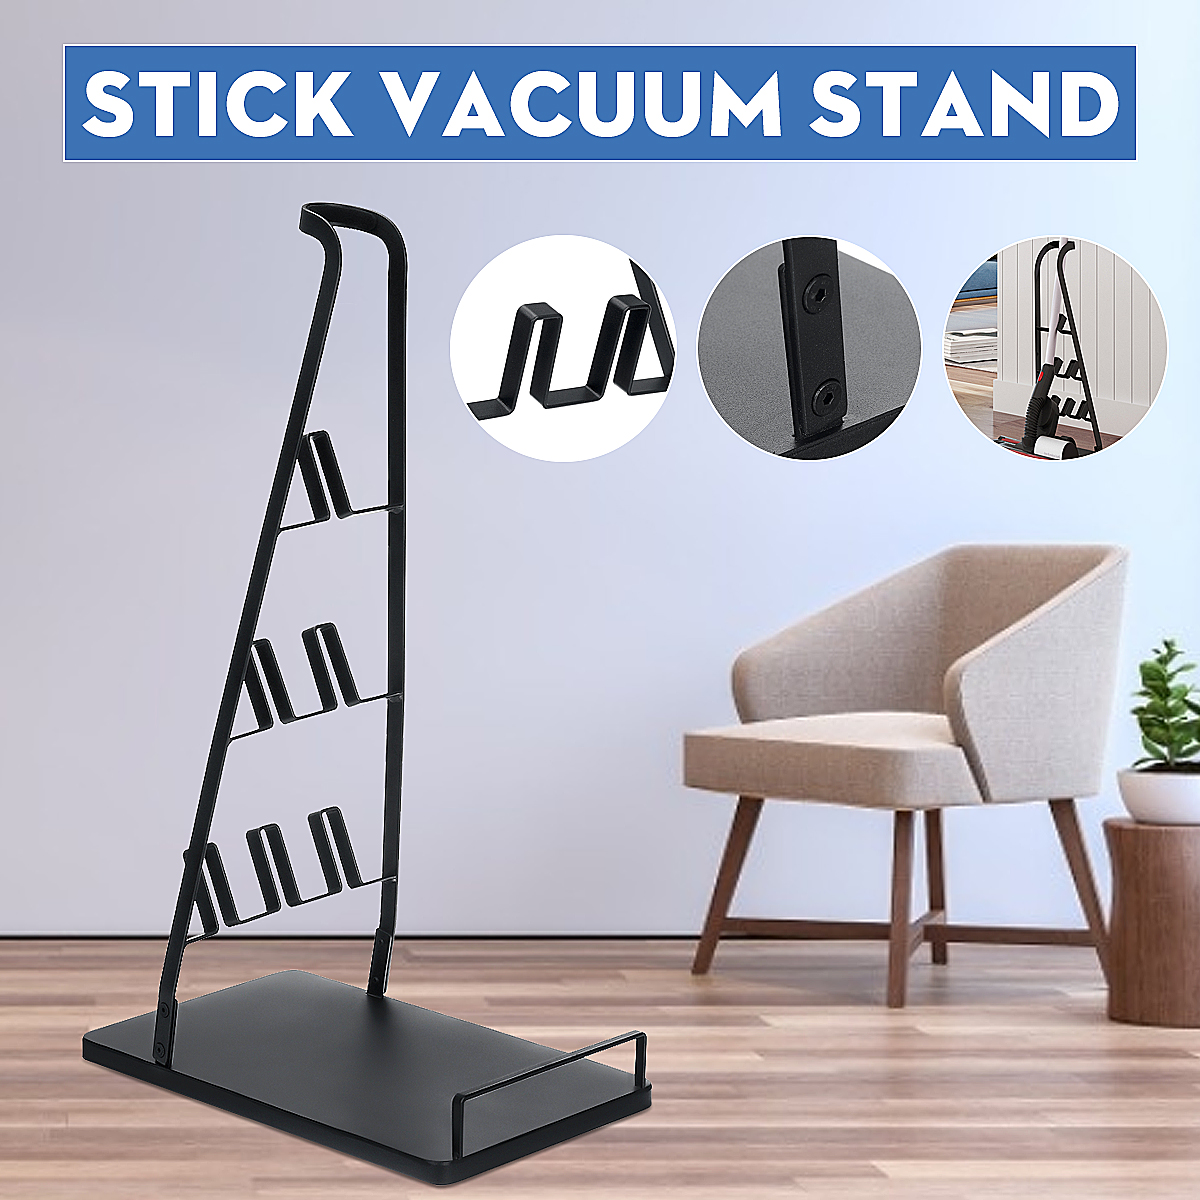 Vacuum-Cleaner-Stand-Fits-For-Dyson-V6-V7-V8-V10-1706752-1